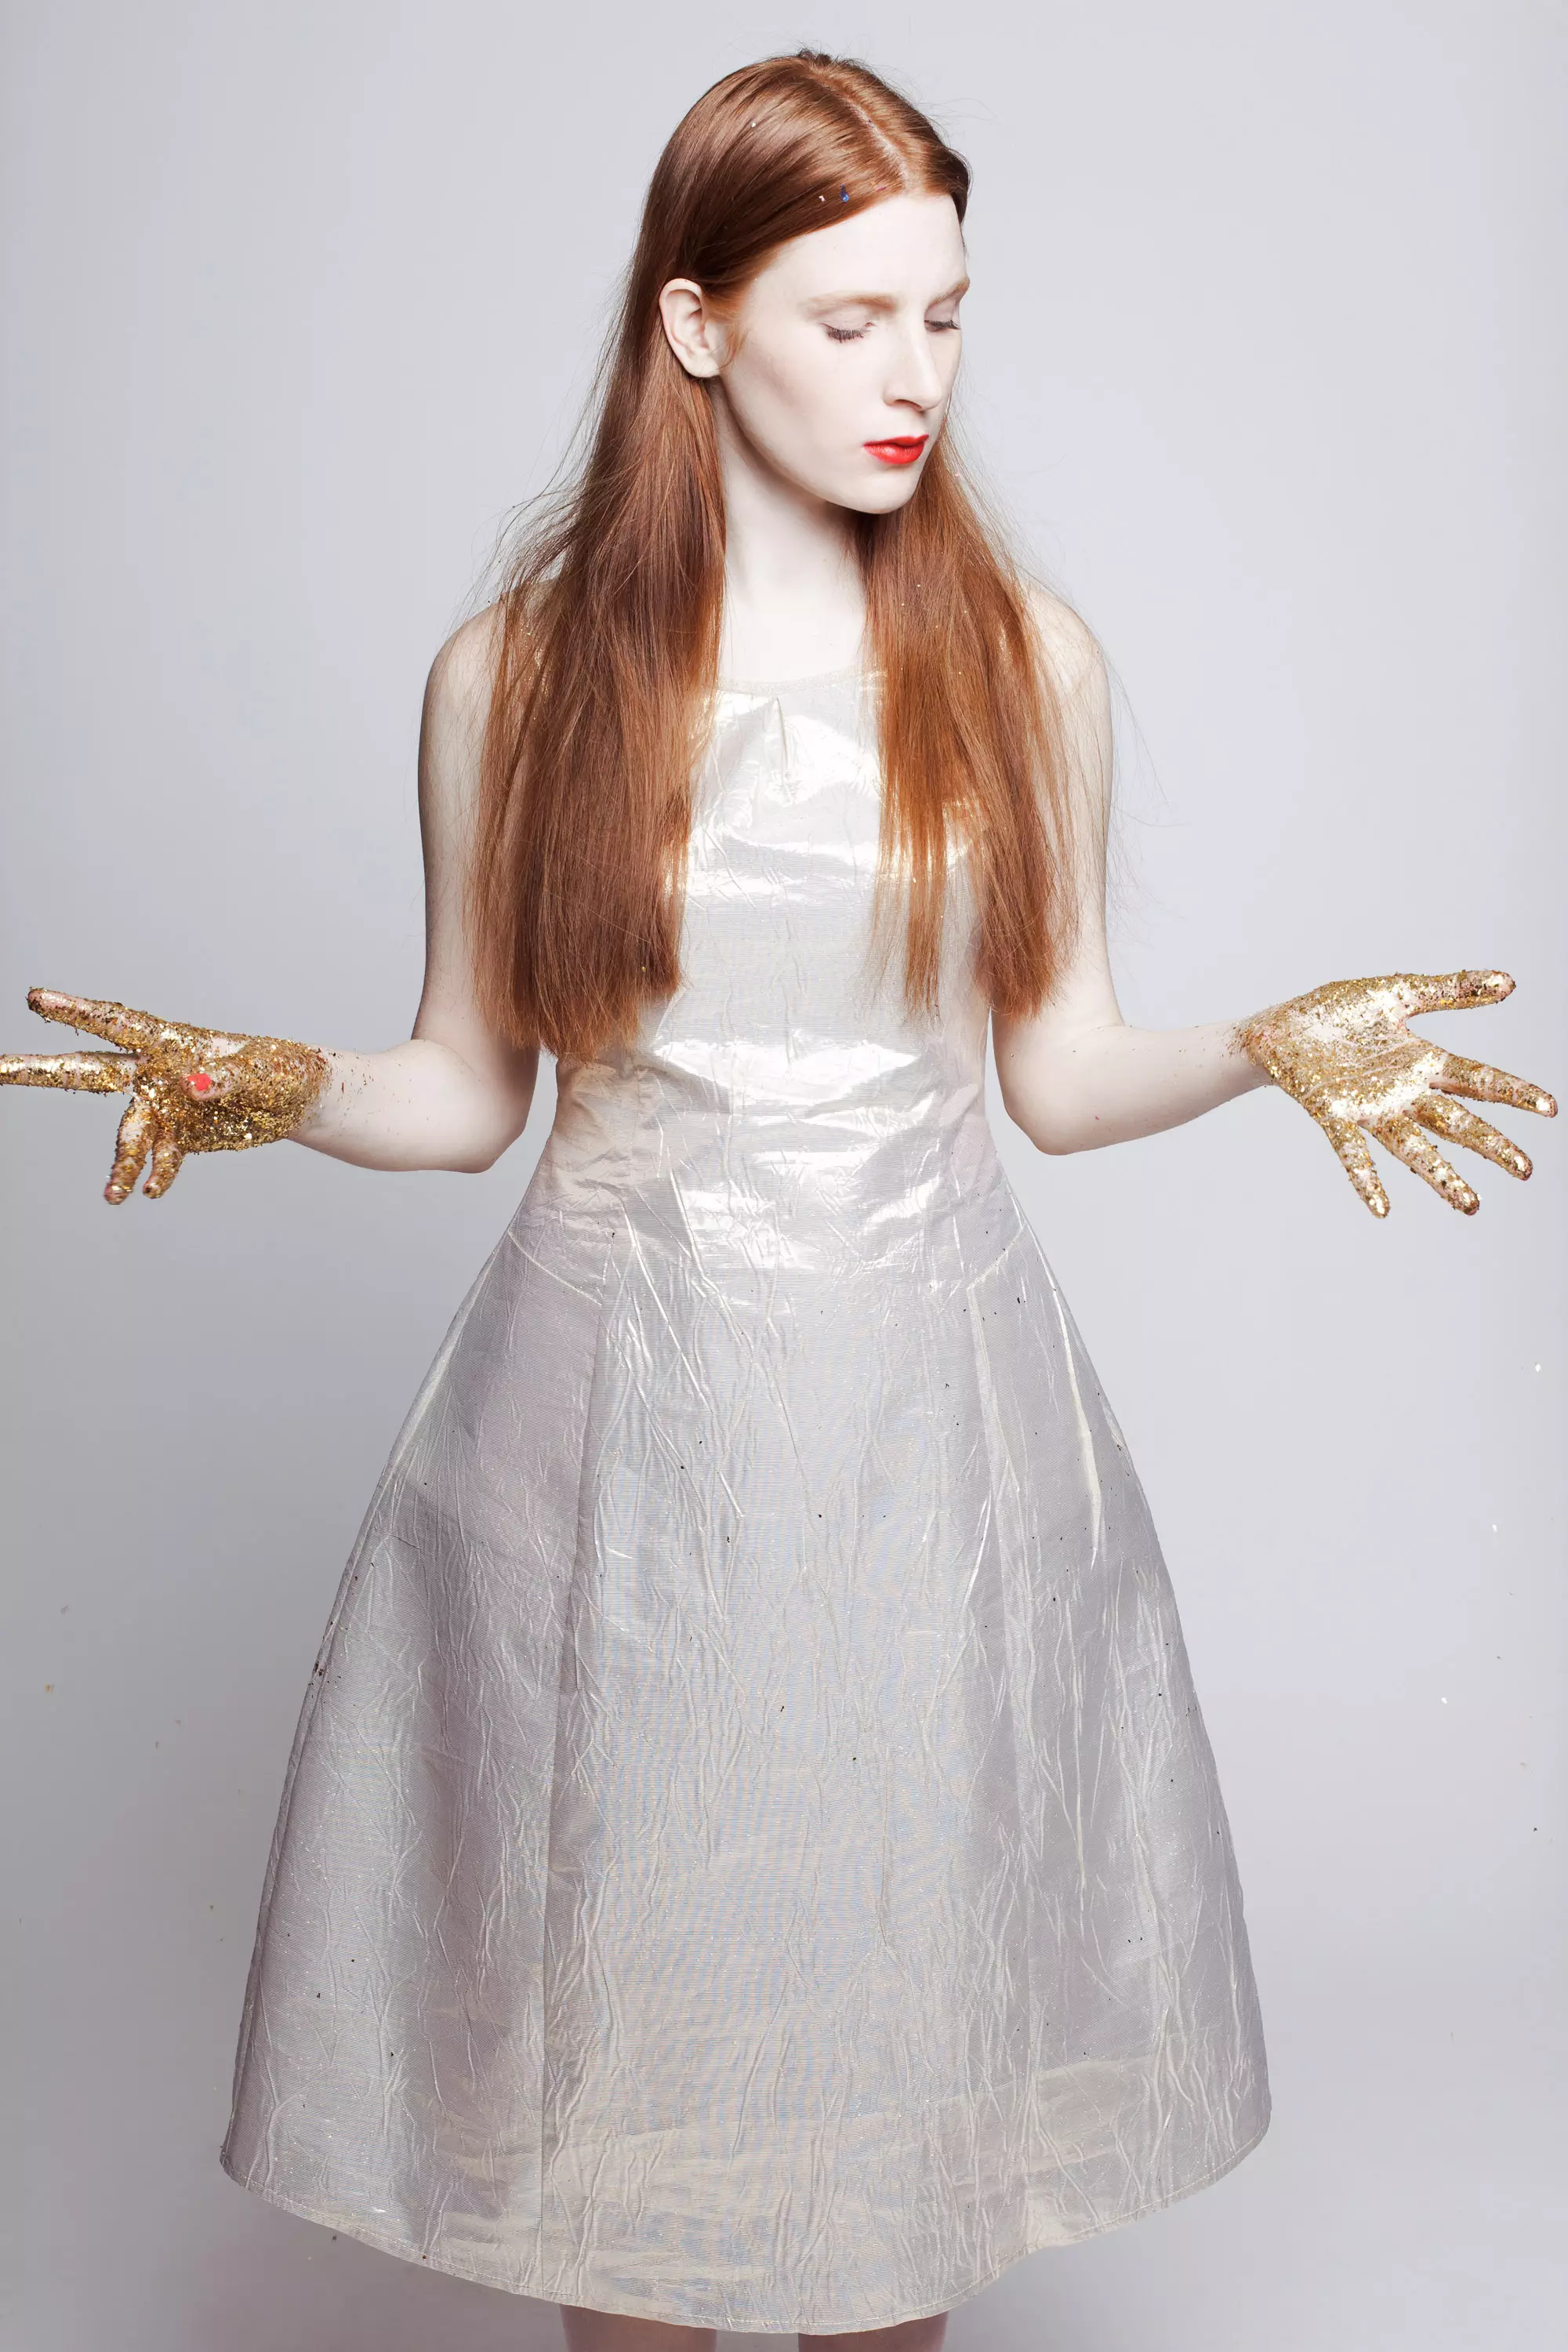 שמלת מיני מטאלית עשויה בד פוייל לורקס מתכתי של דורין פרנקפורט, קיץ 2014. מחיר: 590 שקלים